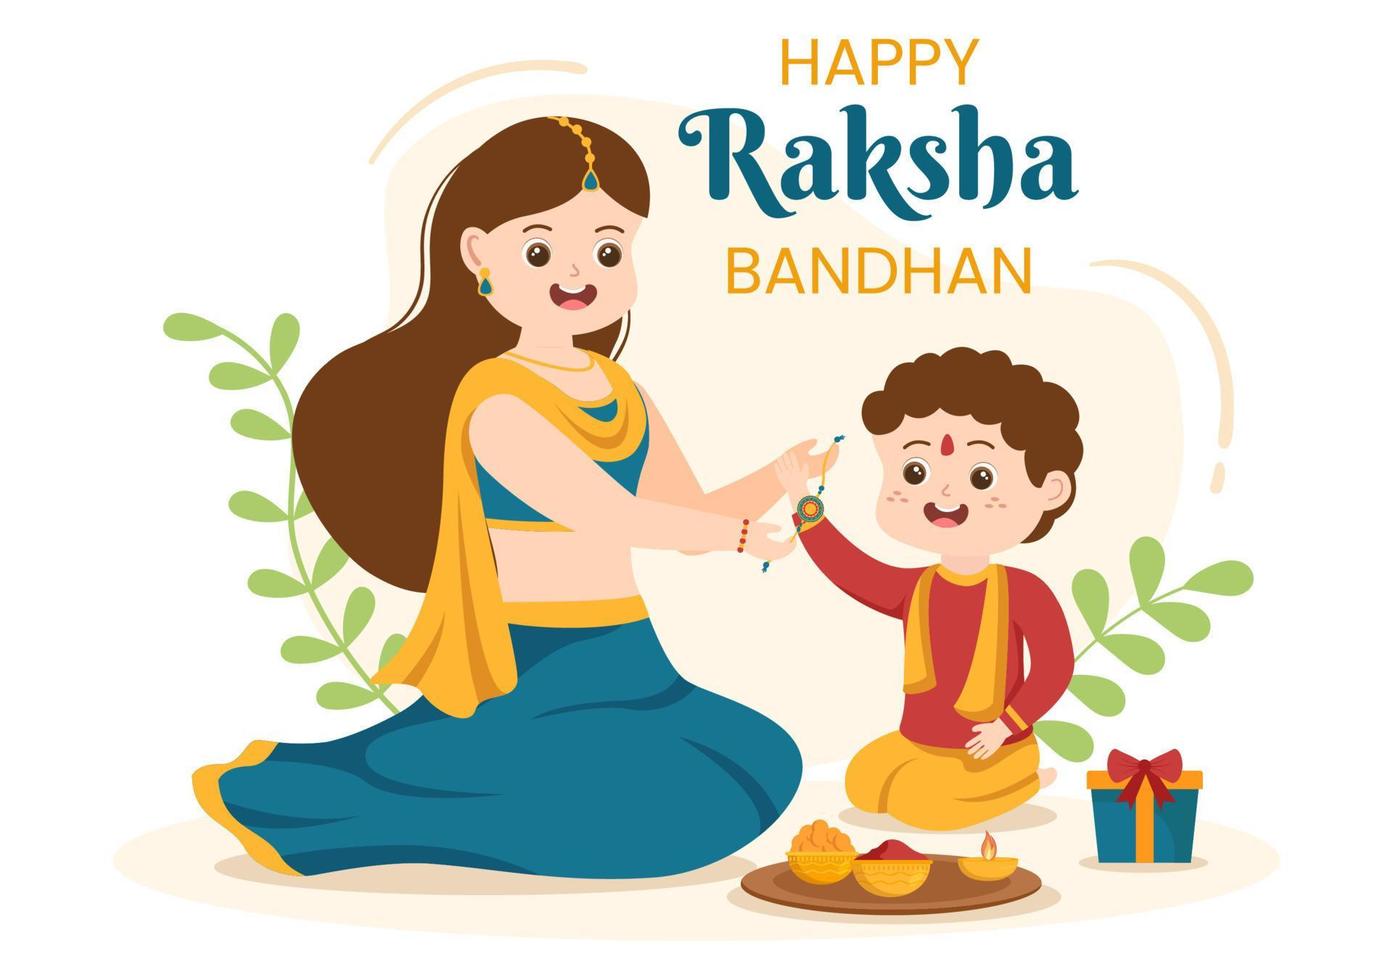 glückliche raksha bandhan cartoon illustration mit schwester, die rakhi am handgelenk ihres bruders bindet, um die bande der liebe in der indischen festfeier zu bedeuten vektor